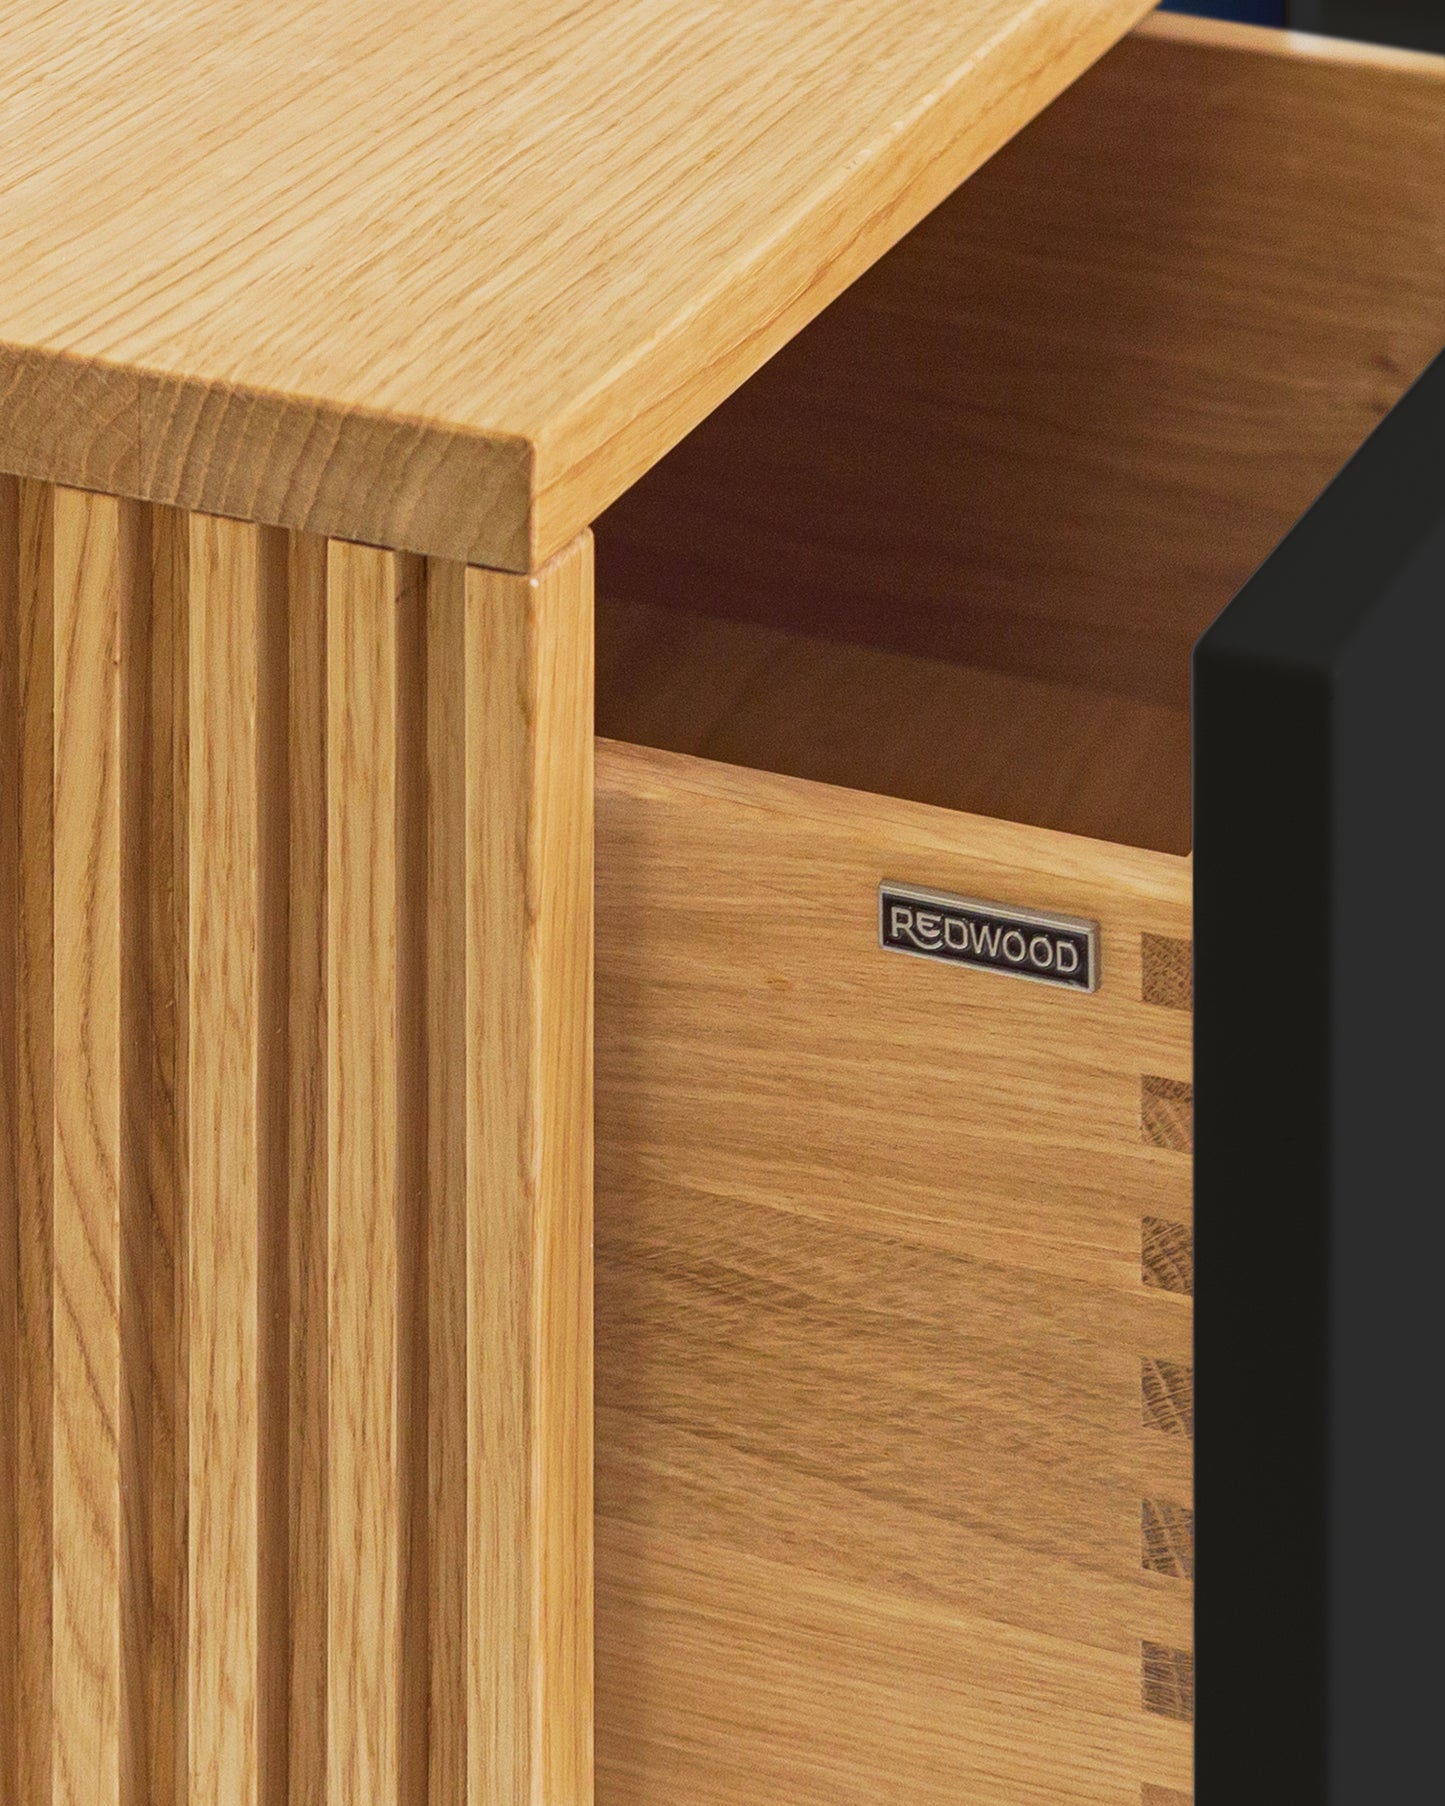 Lowboard in Eiche schwarz:Schubladen in Massivholz:Die Verwendung von Massivholz für die Schubladen und die unterseitige (also nicht sichtbare) Befestigung der Auszüge sorgen nicht nur für ein hochwertiges Design, sondern auch für maximale Stabilität und Langlebigkeit.